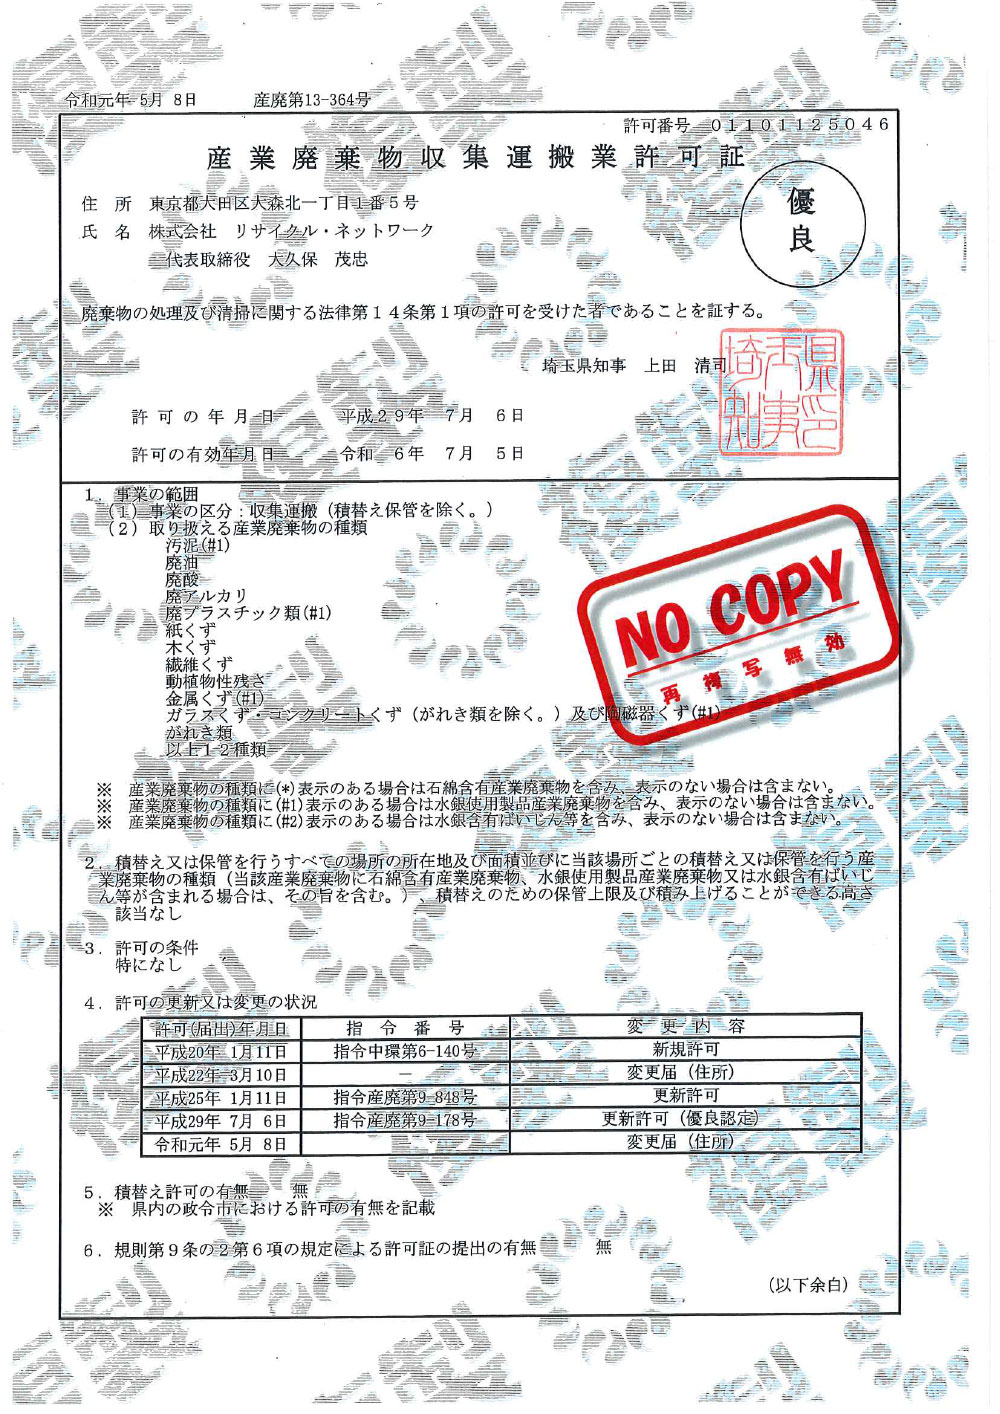 埼玉県 産業廃棄物収集運搬許可証